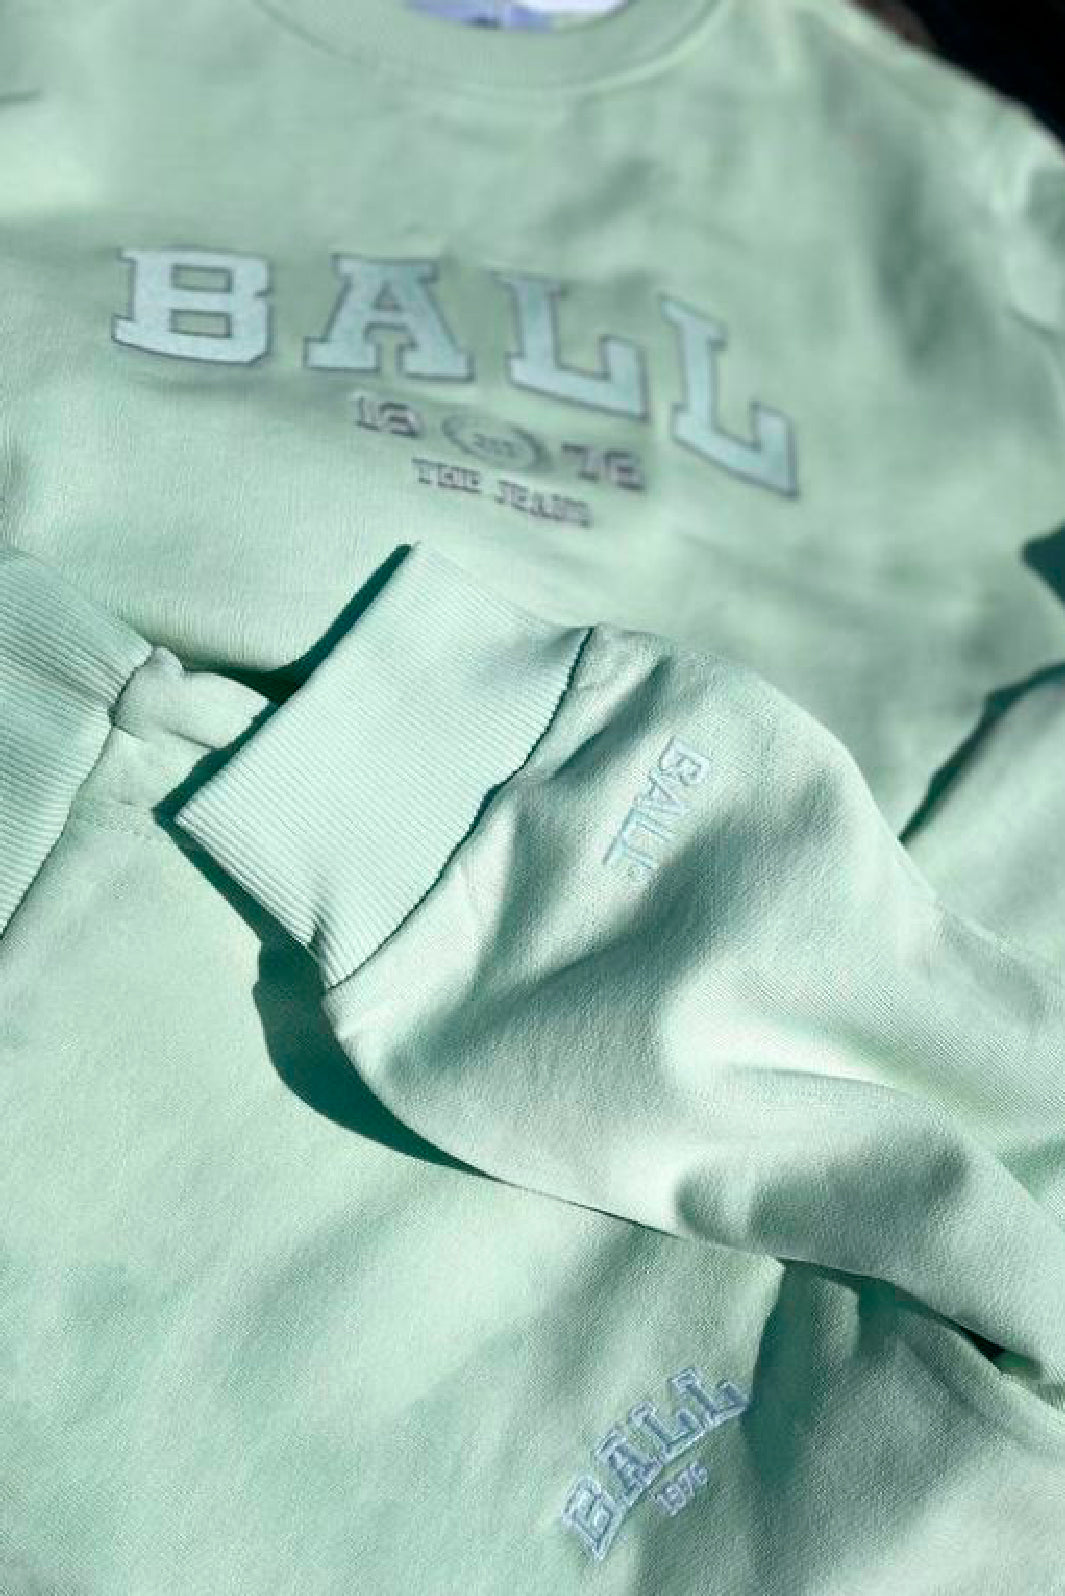 Ball - Sweatshirt L. Taylor - Mint Sweatshirts 